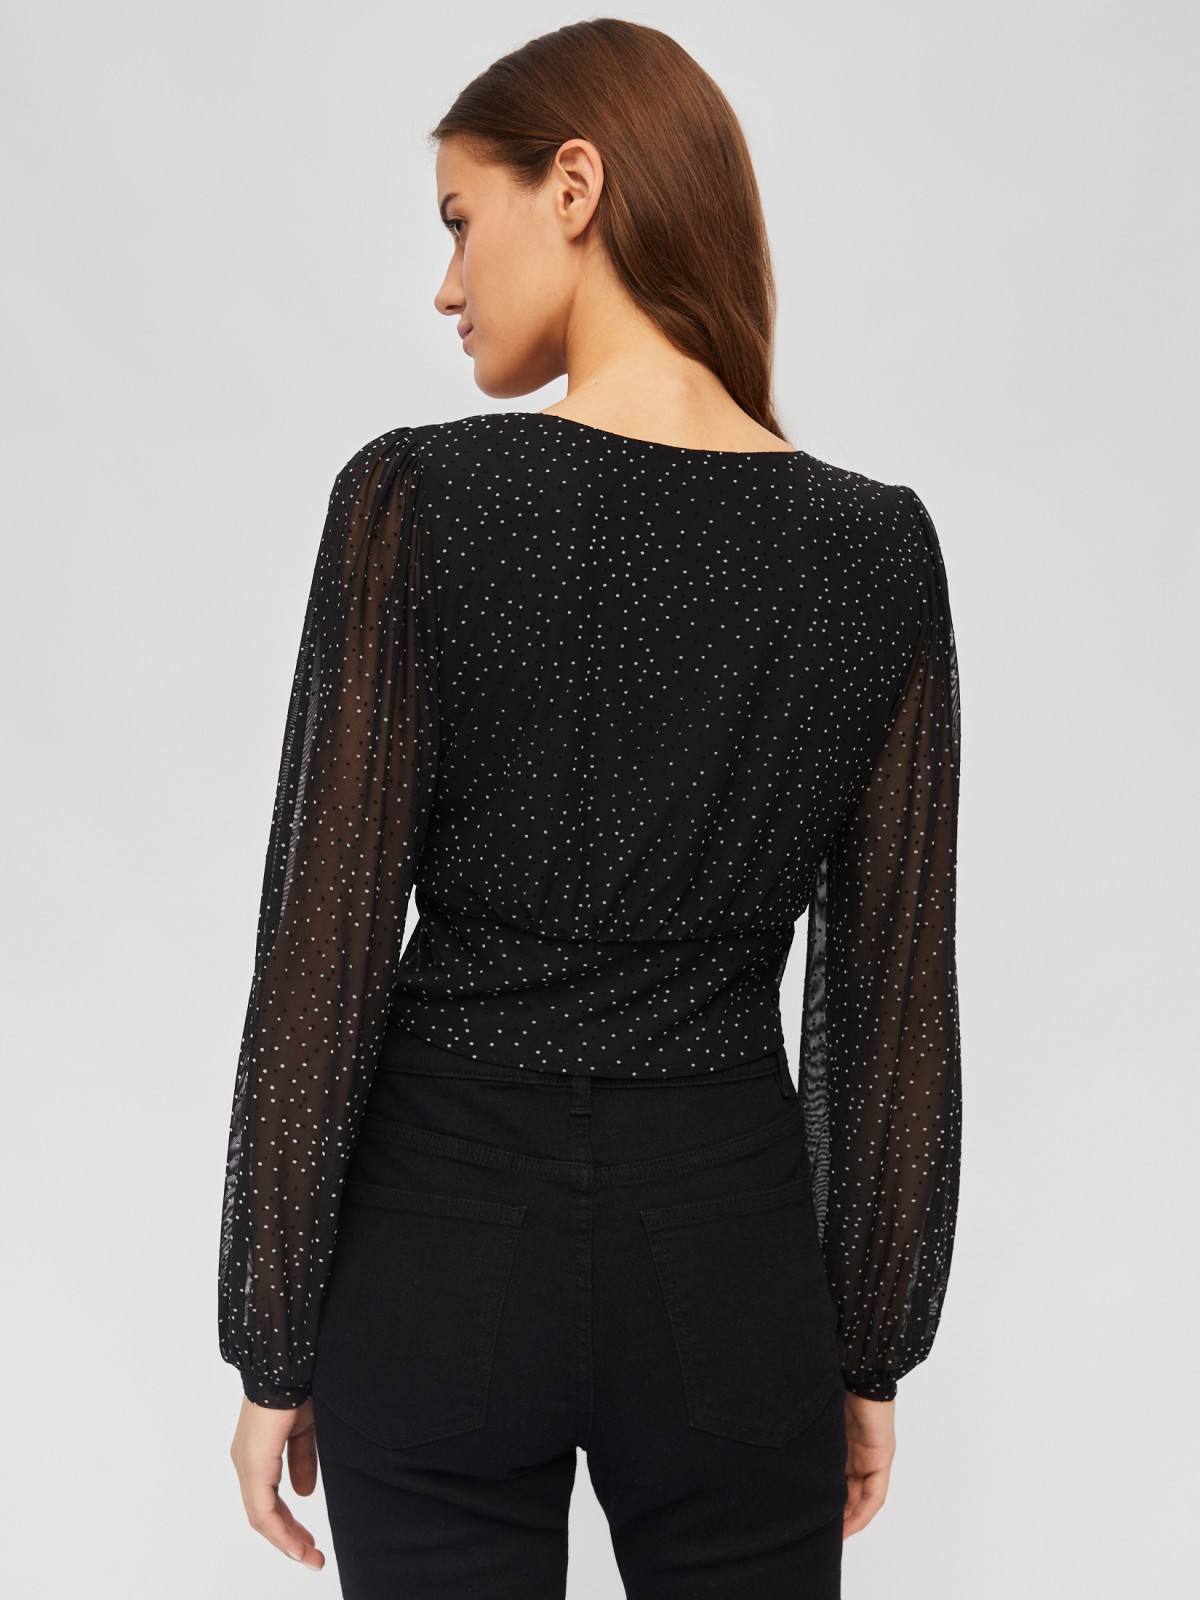 Укороченный топ-блузка с вырезом и принтом в горошек zolla 024111159261, цвет черный, размер XS - фото 6